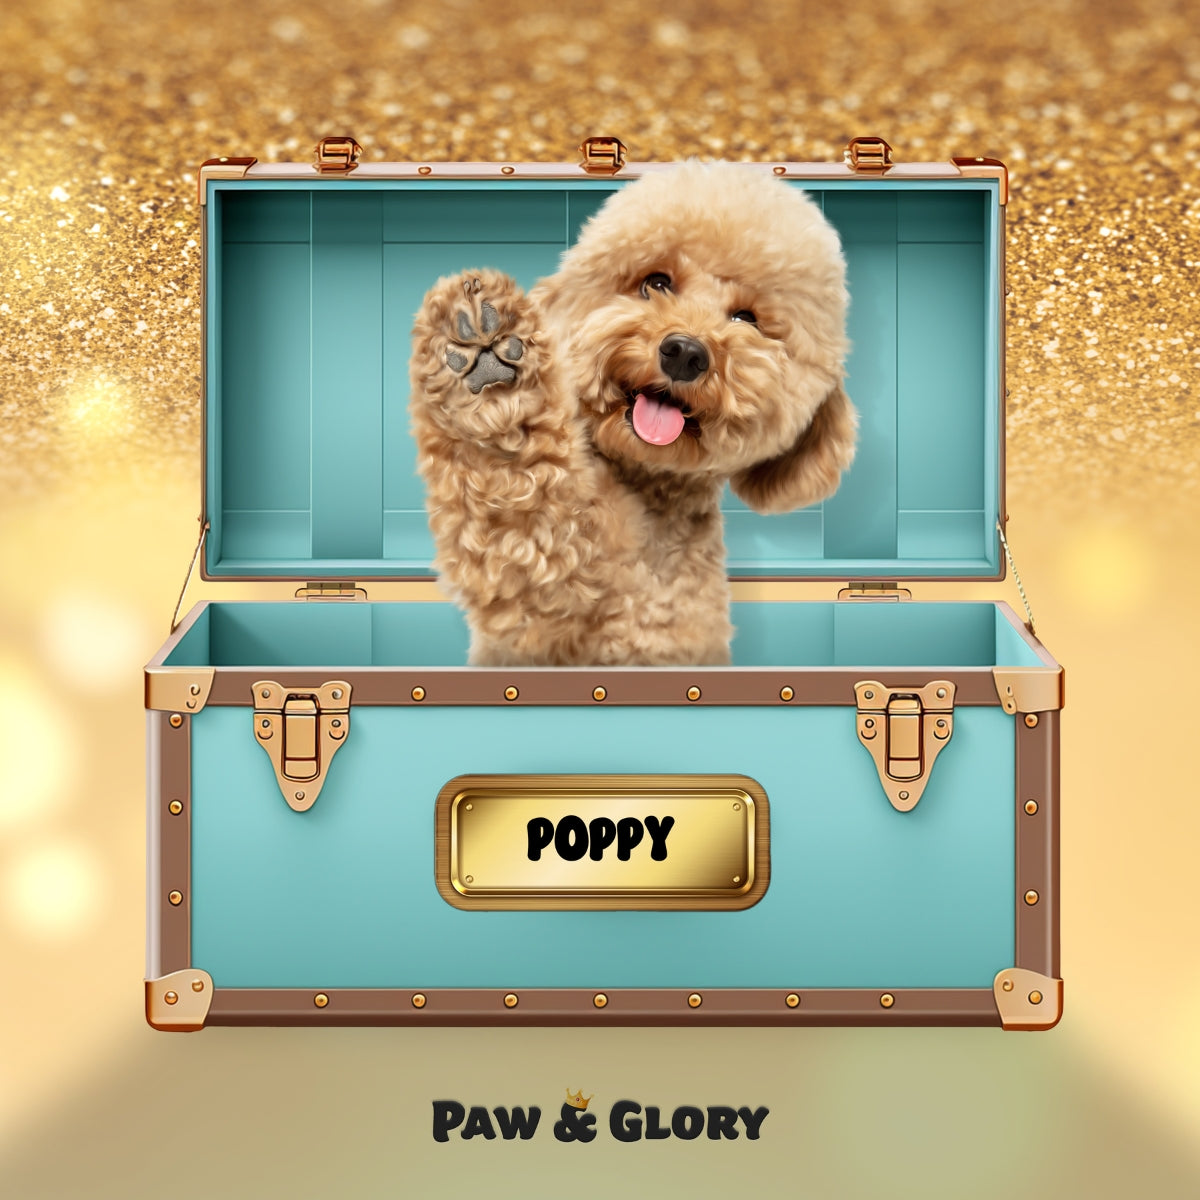 Paw-fany & Co. Luxury Trunk: Custom Digital Download Pet Portrait